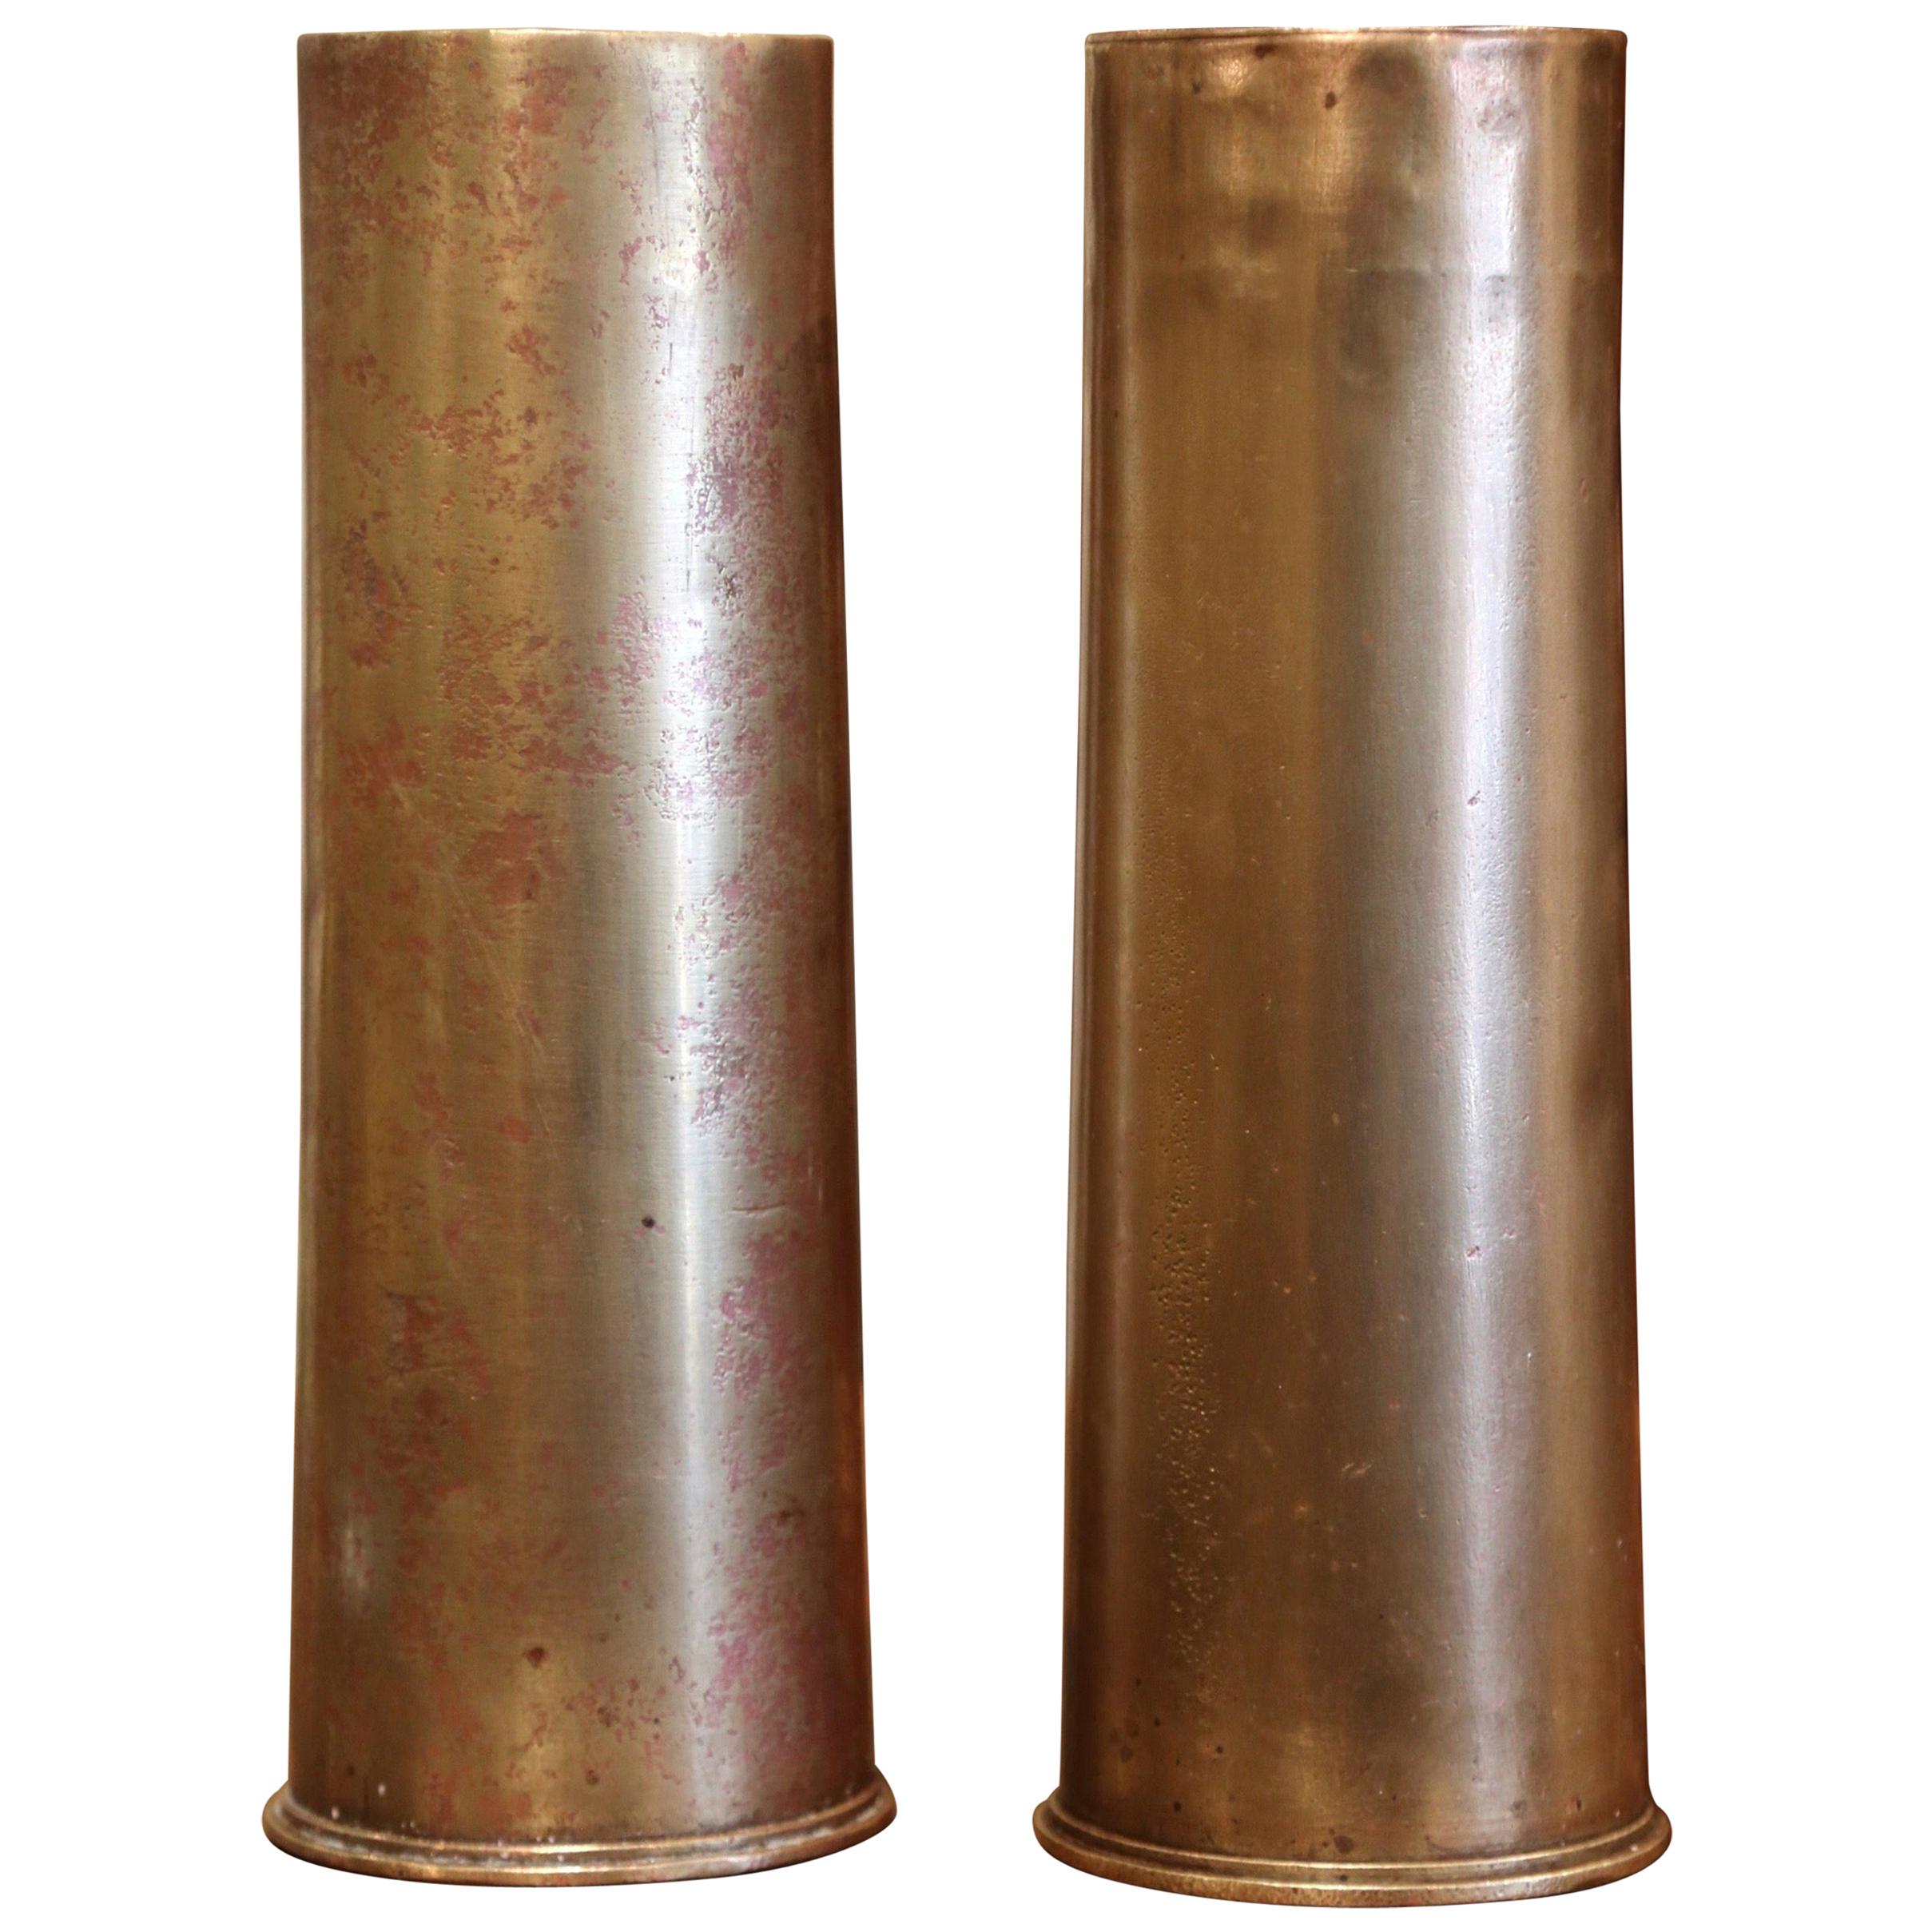 Pair of WW1 British Brass Artillery Shells Dated 1915